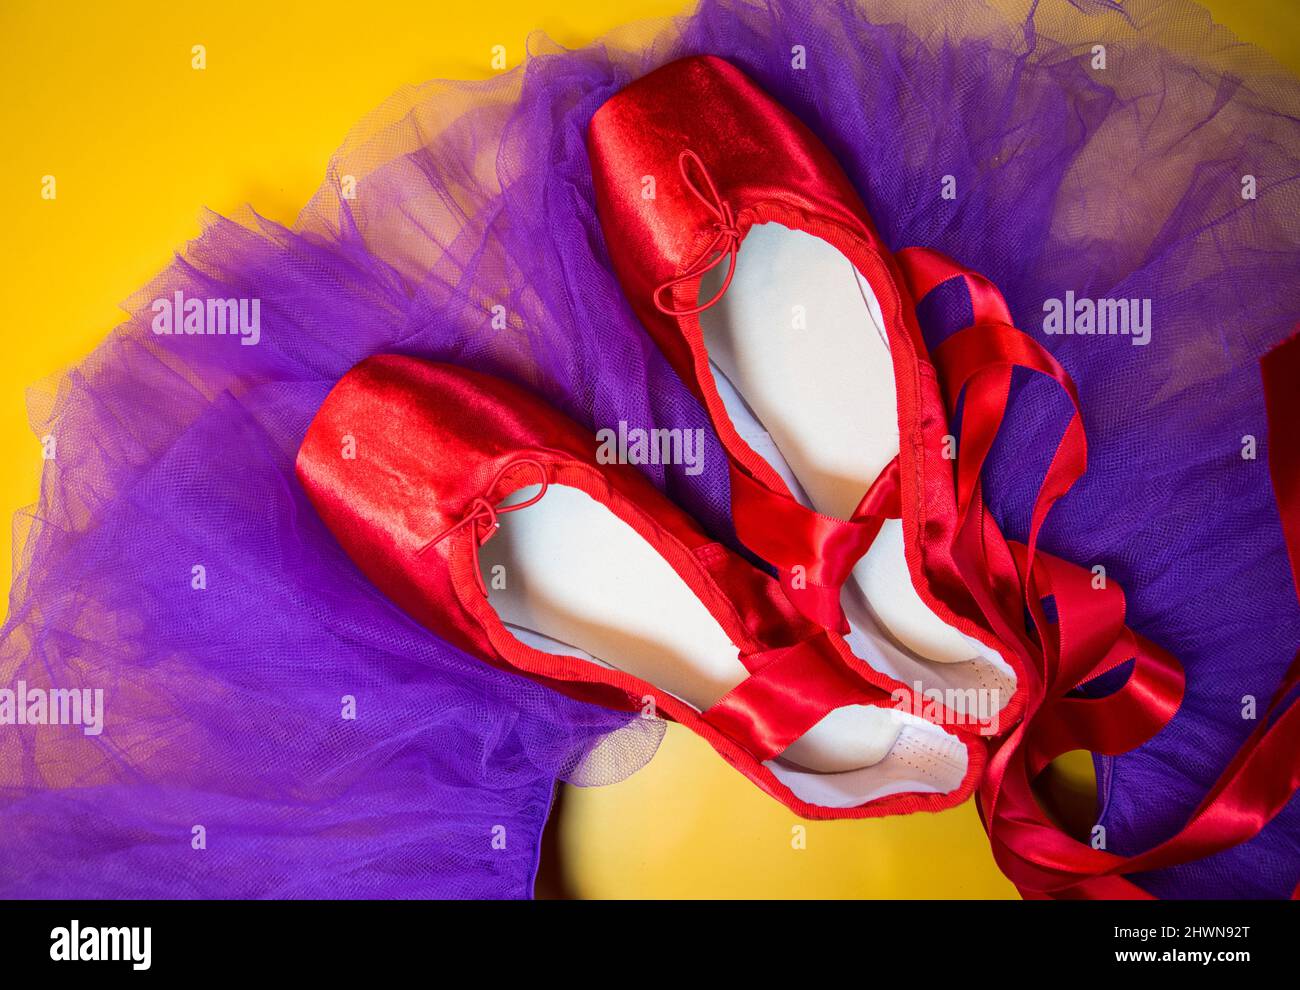 Rote Ballet spitzenschuhe auf einem violetten Tutu und einem gelben Hintergrund. Stockfoto